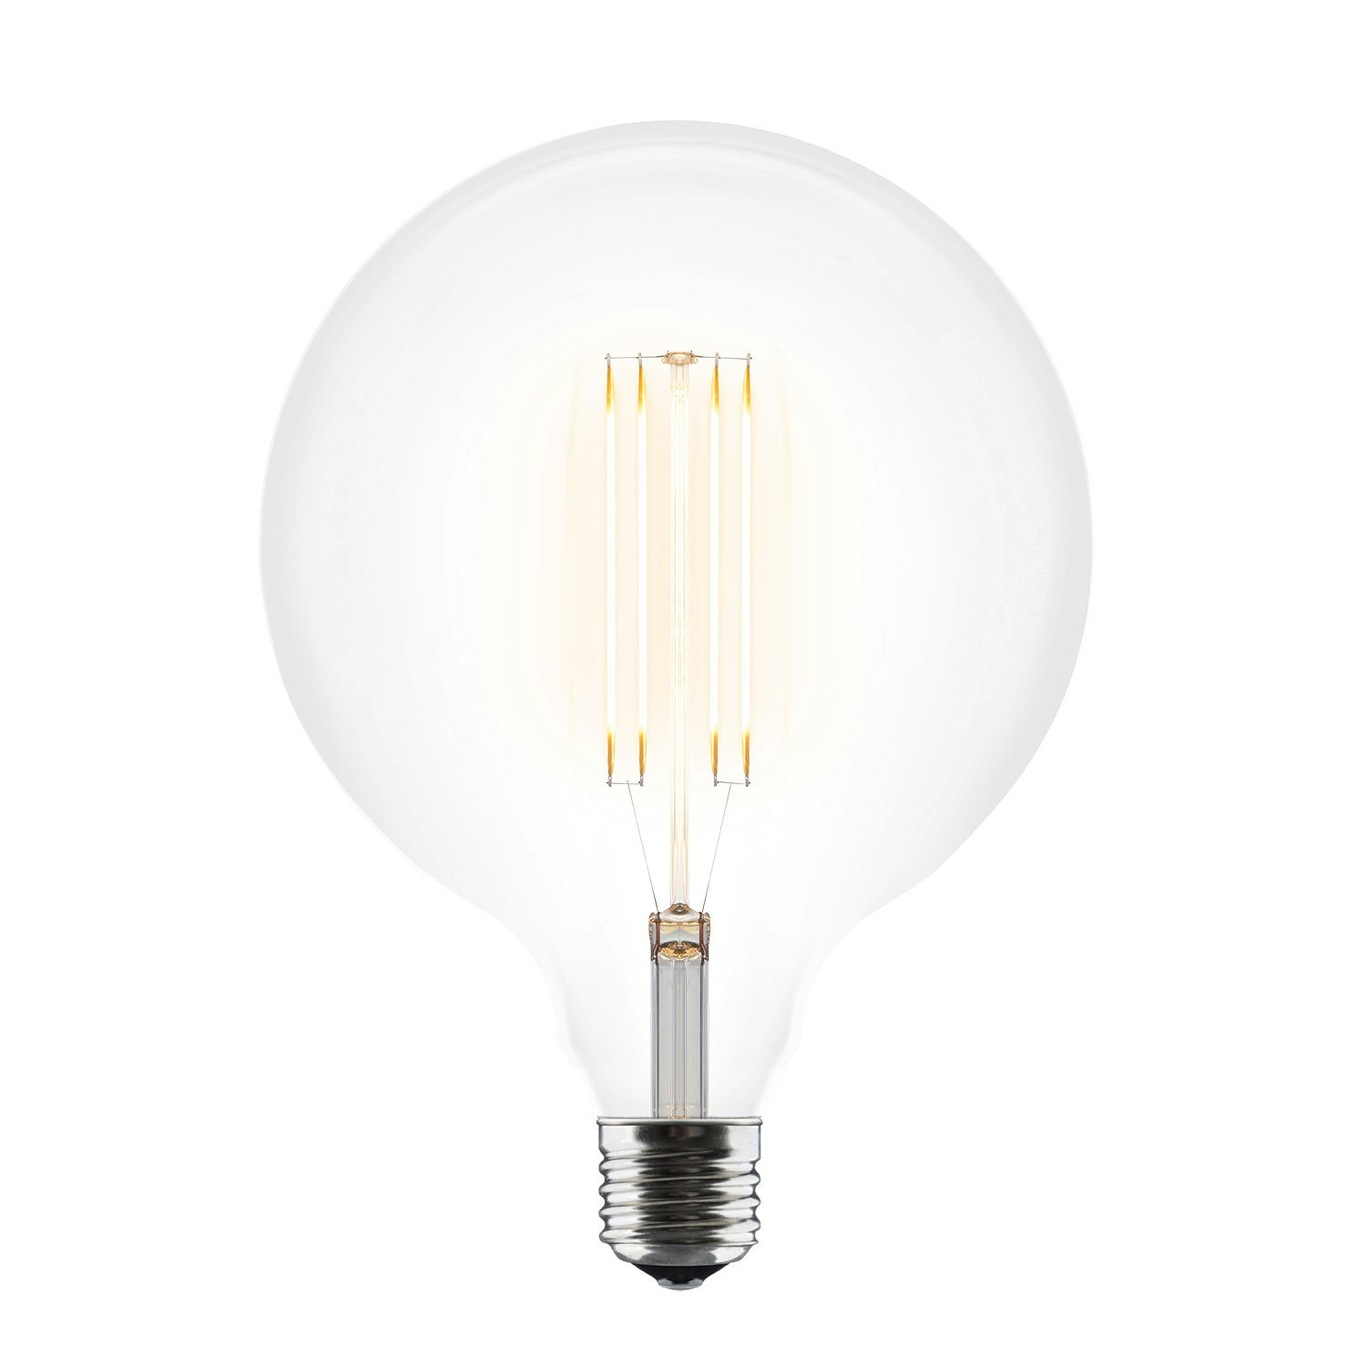 Idea Glühlampe E27 LED 3W